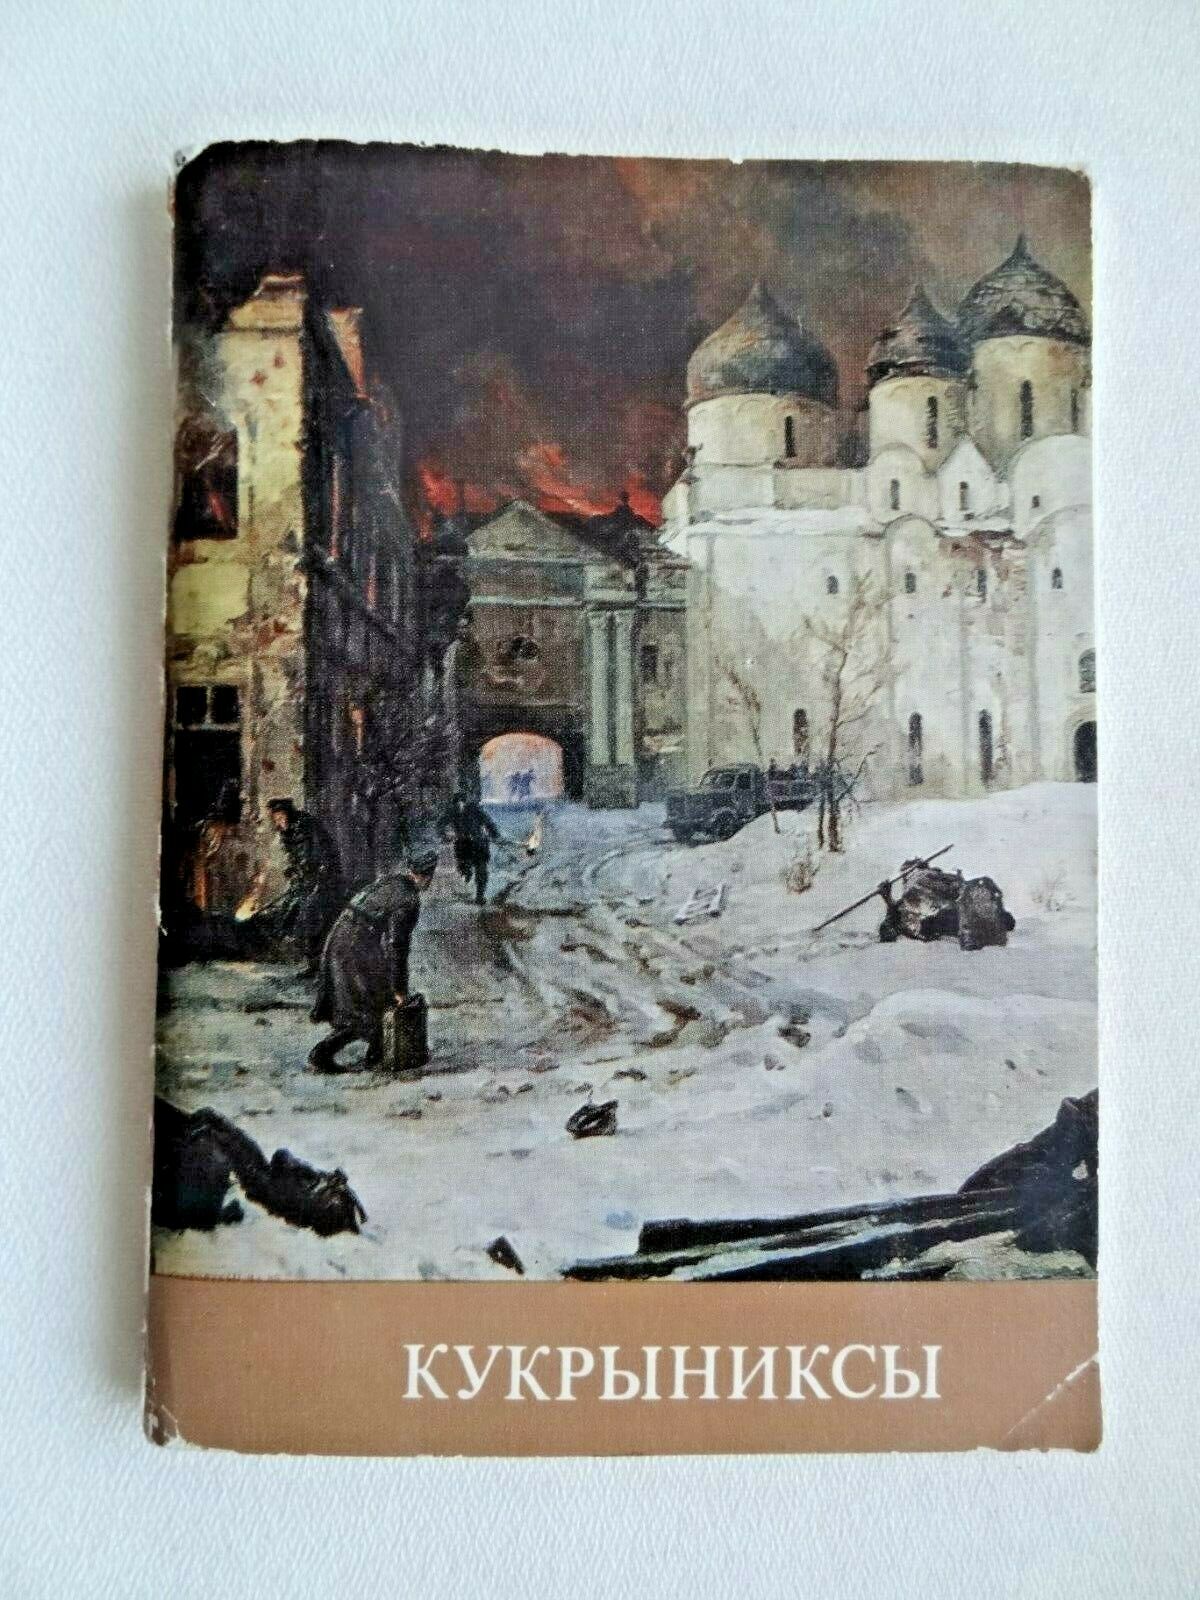 1976 Кукрыниксы Kukryniksy Album Humor Caricature Art Biography Russian Book